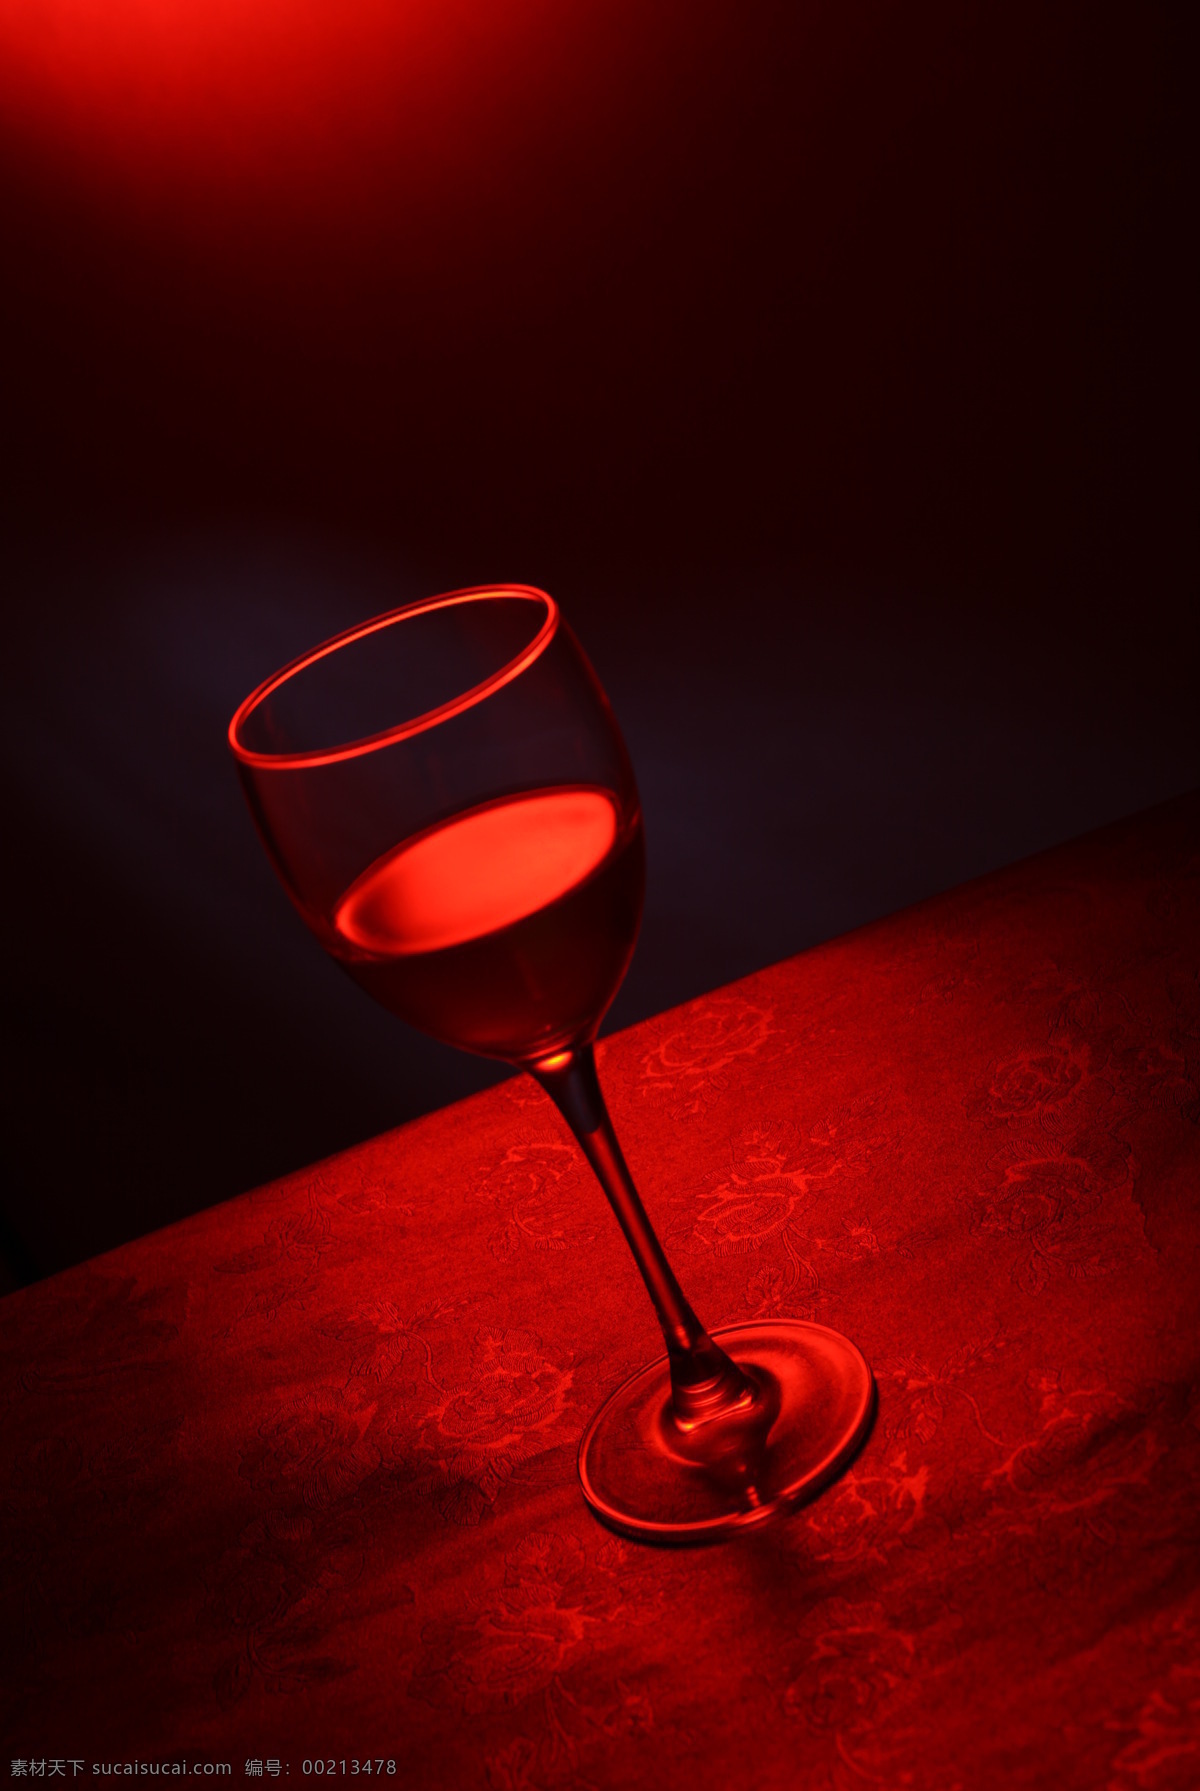 高脚杯 红酒 红色 暖调 玻璃杯 高清 大图 家居 饮料酒水 餐饮美食